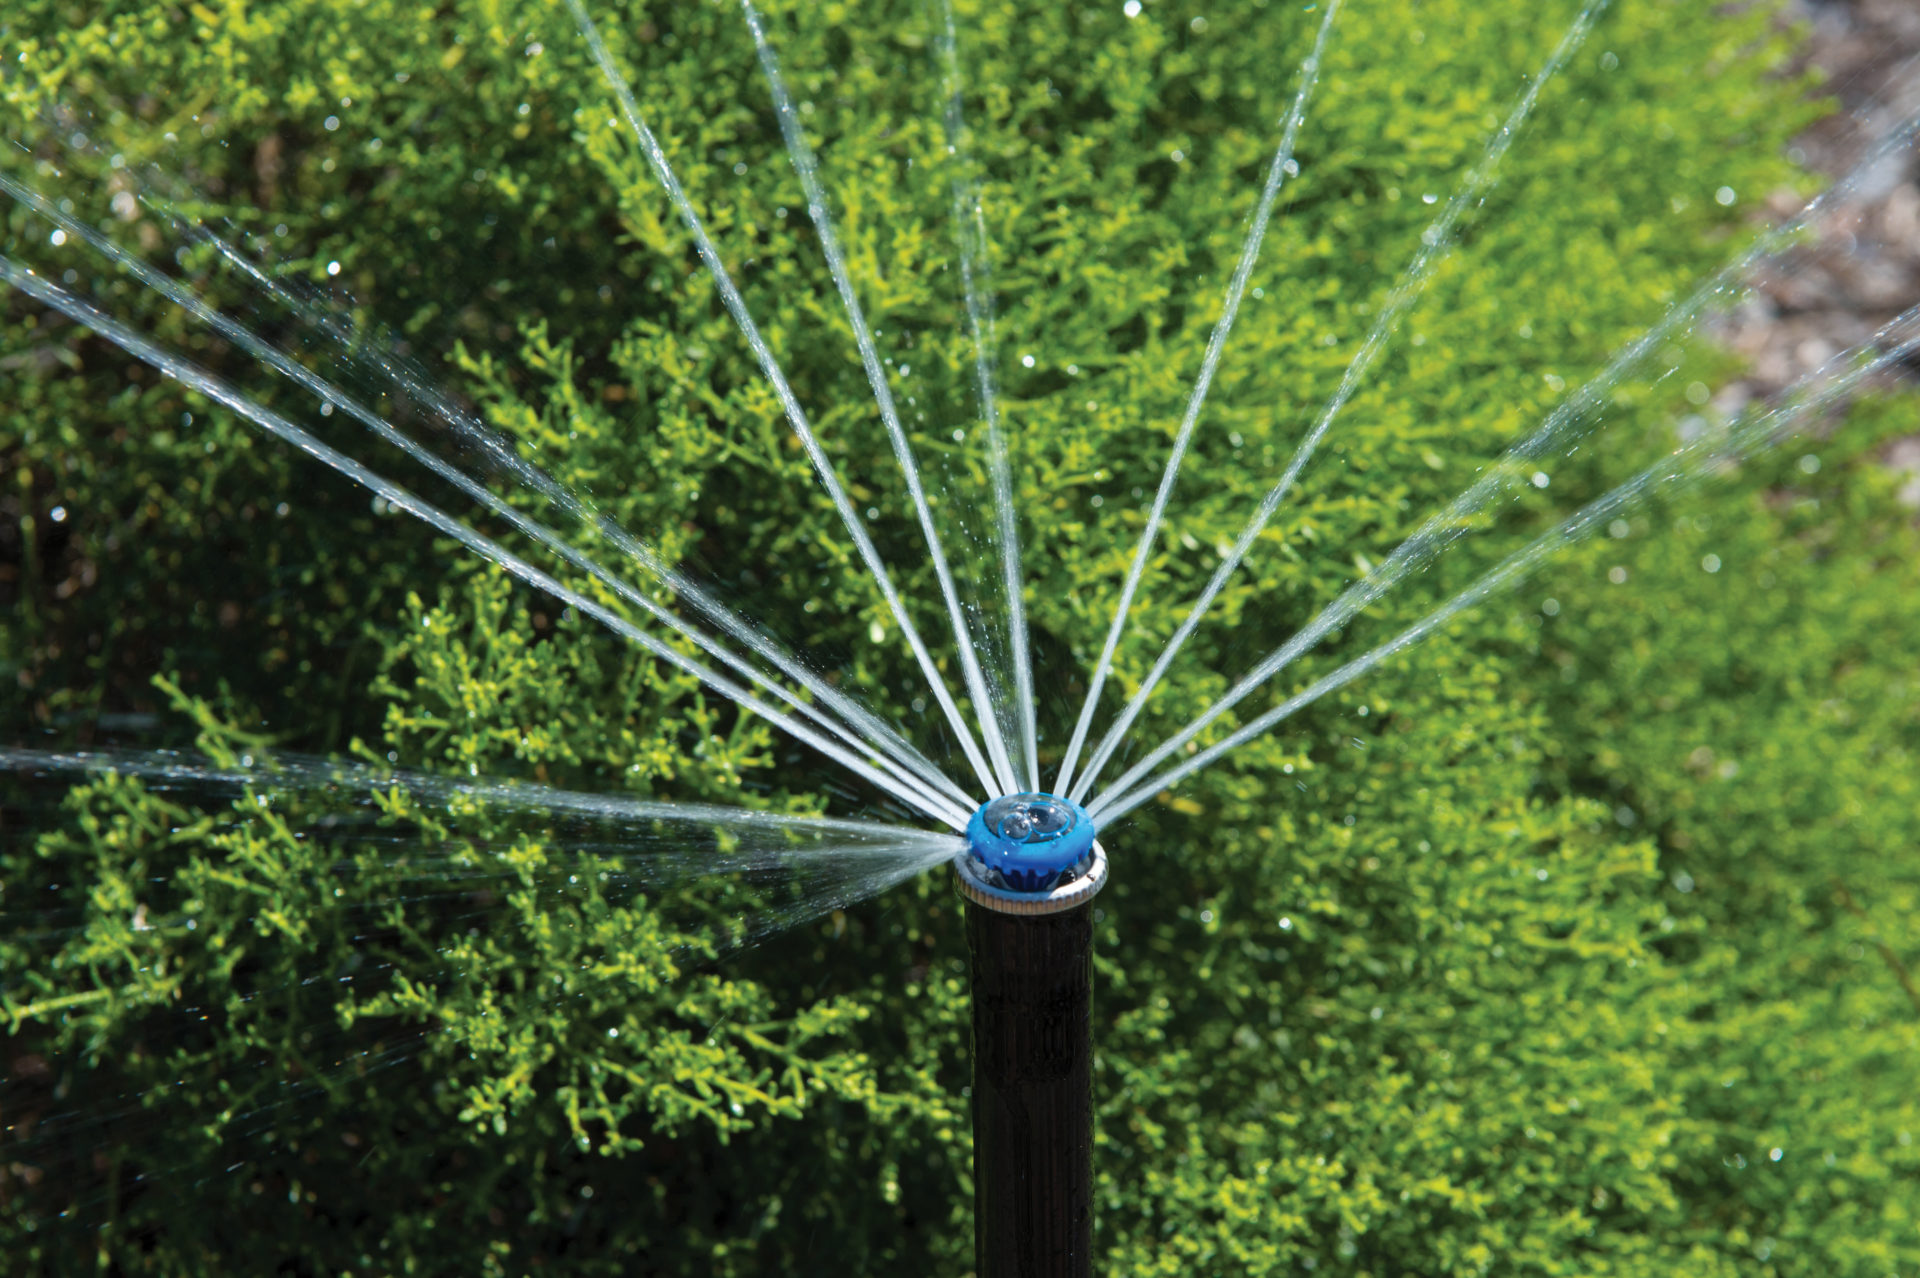 Sprinkler system repair service in Leawood, Lenexa, Overland Park, & Kansas City areas. 